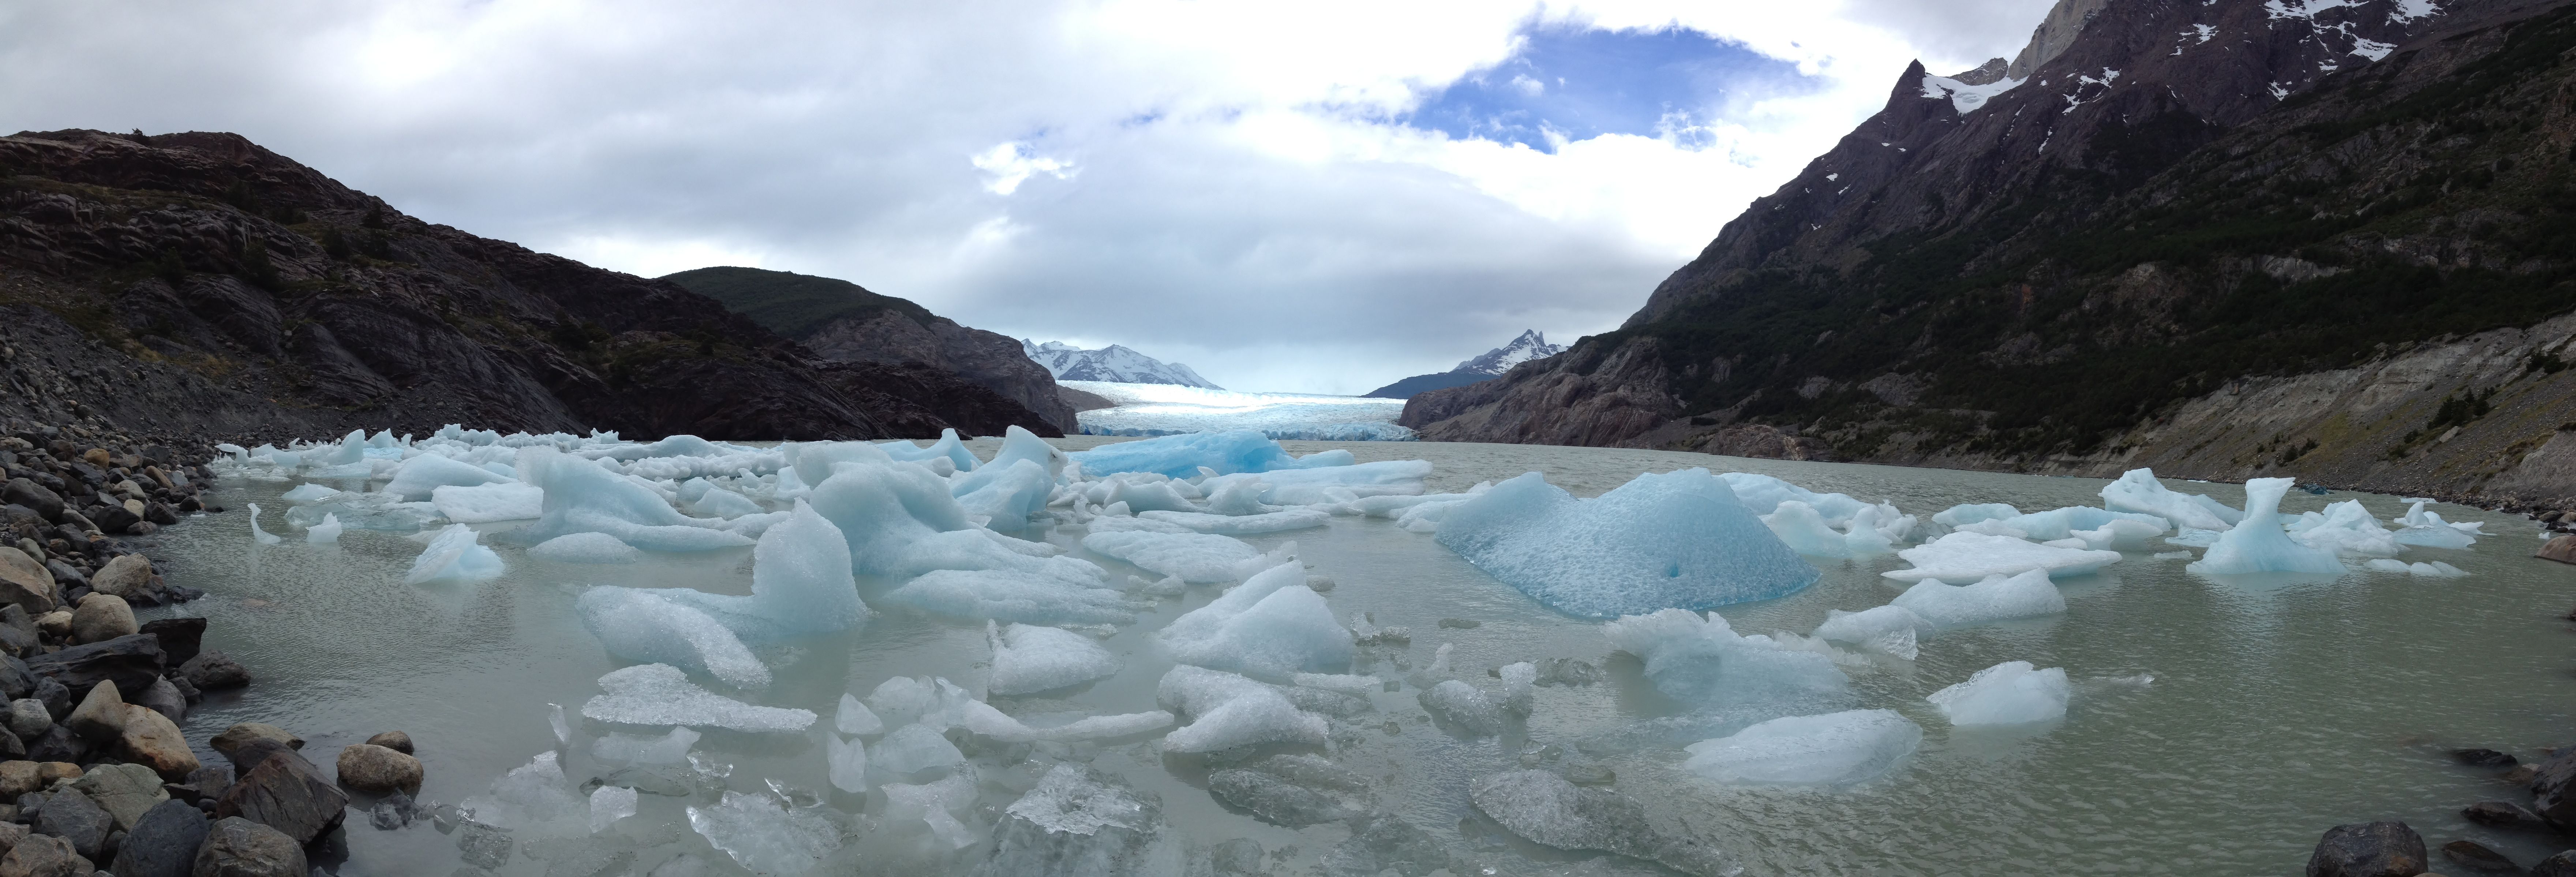 glaciergrey01.jpg